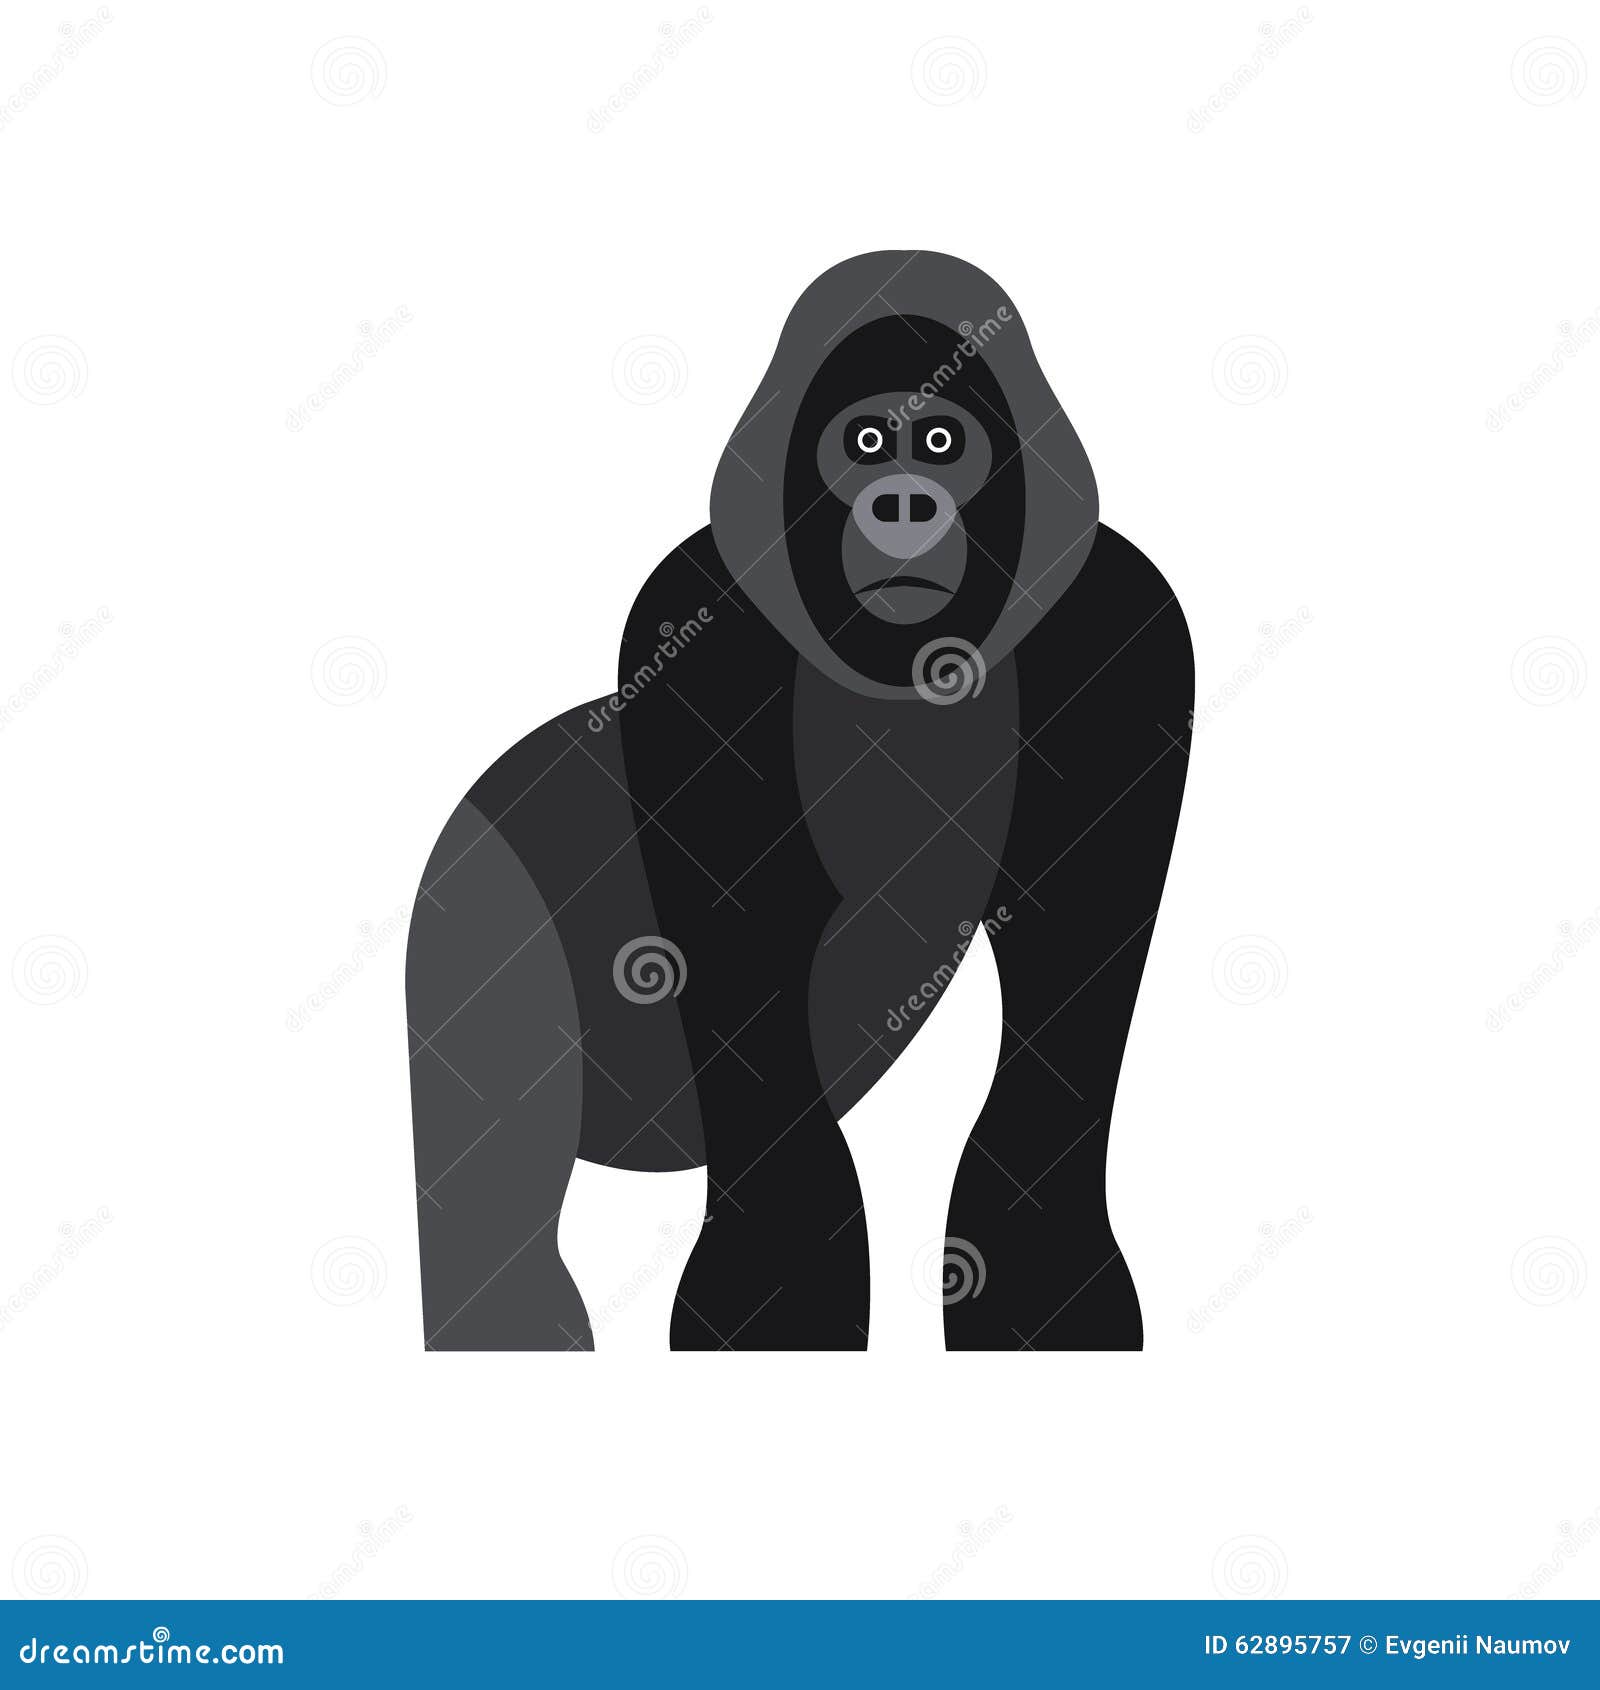 Стикеры с обезьяной телеграмм фото 1